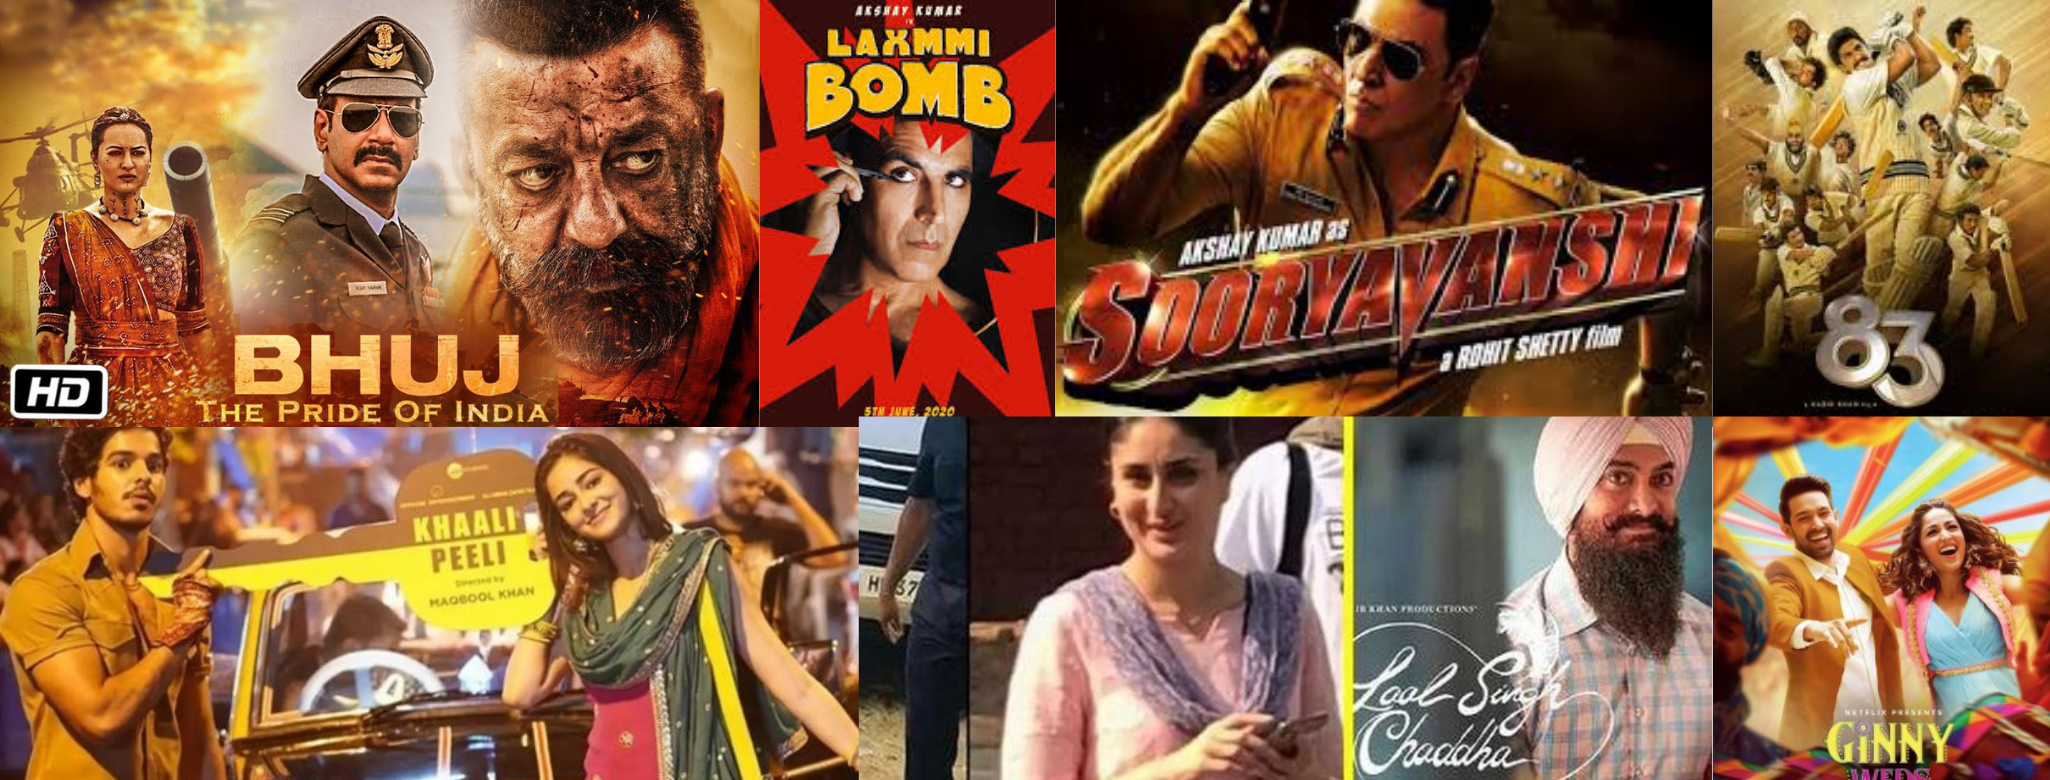 Upcoming Bollywood Hindi Movies in 2020: